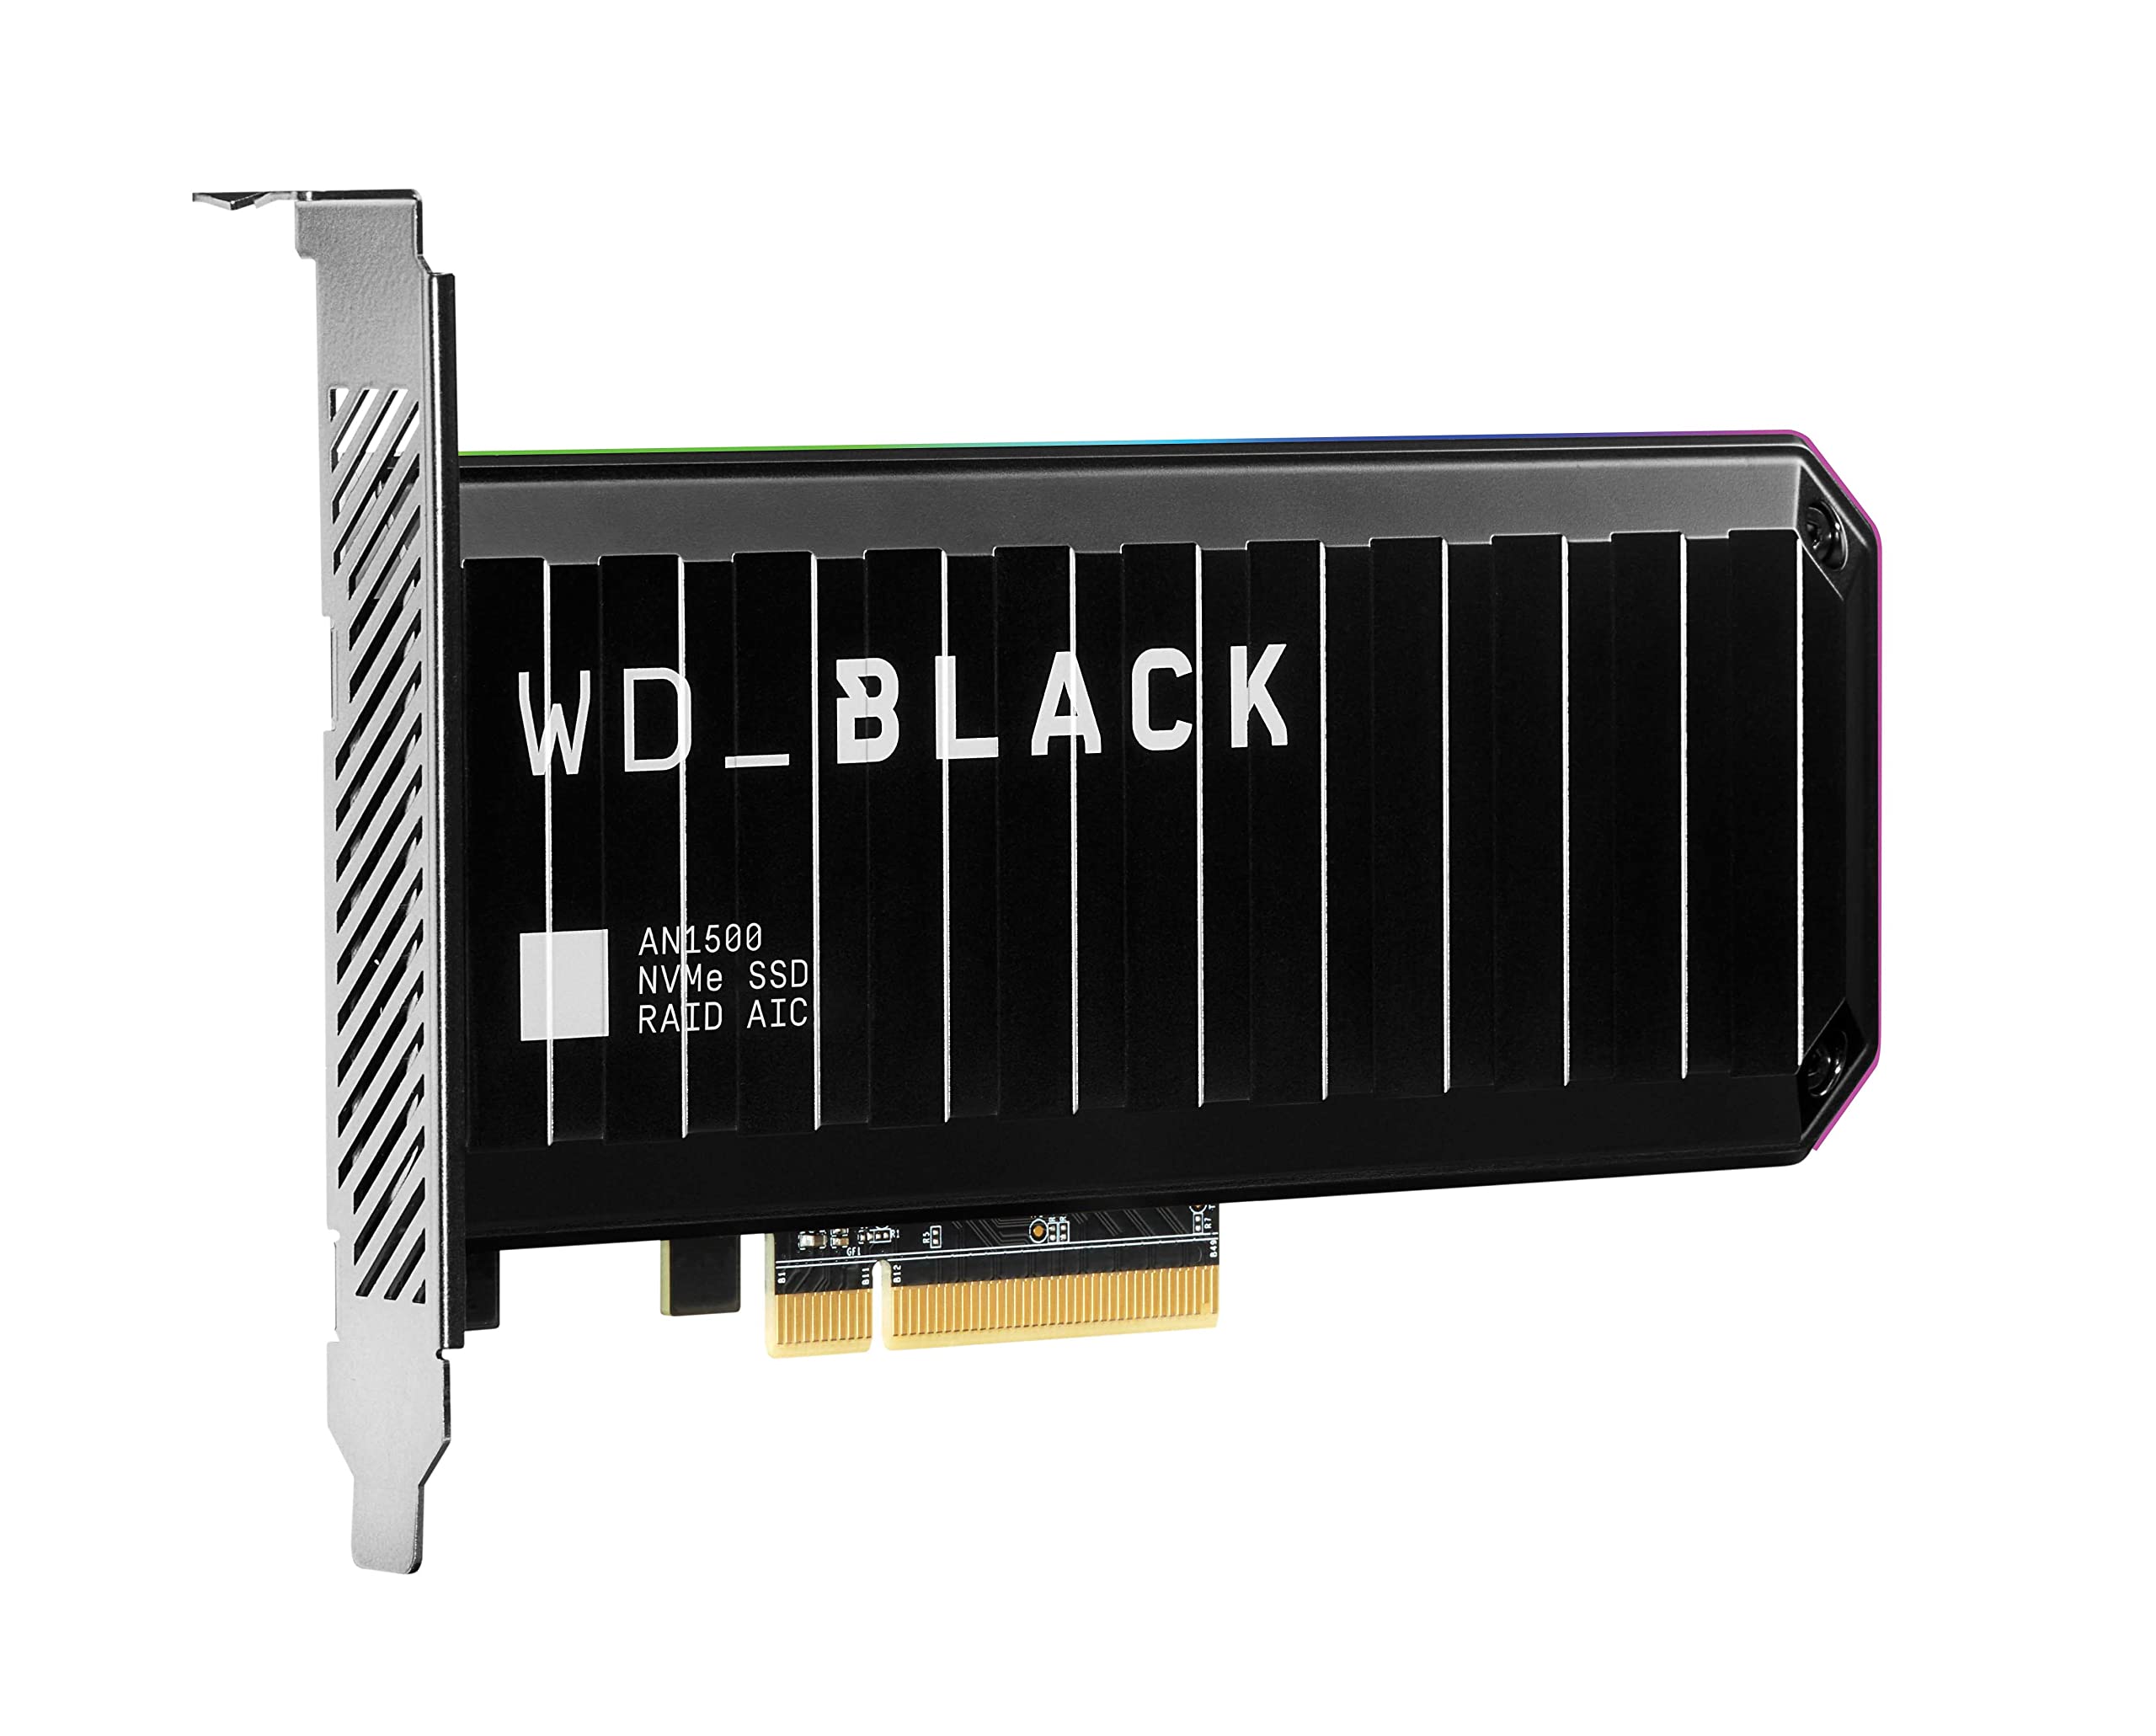 WD_BLACK AN1500 NVMe SSD Add-In-Karte 2 TB, Lesegeschwindigkeit von bis zu 6.500 MB/s und Schreibgeschwindigkeit von bis zu 4.100 MB/s, Bootfähige RAID-Lösung, RGB-Beleuchtung